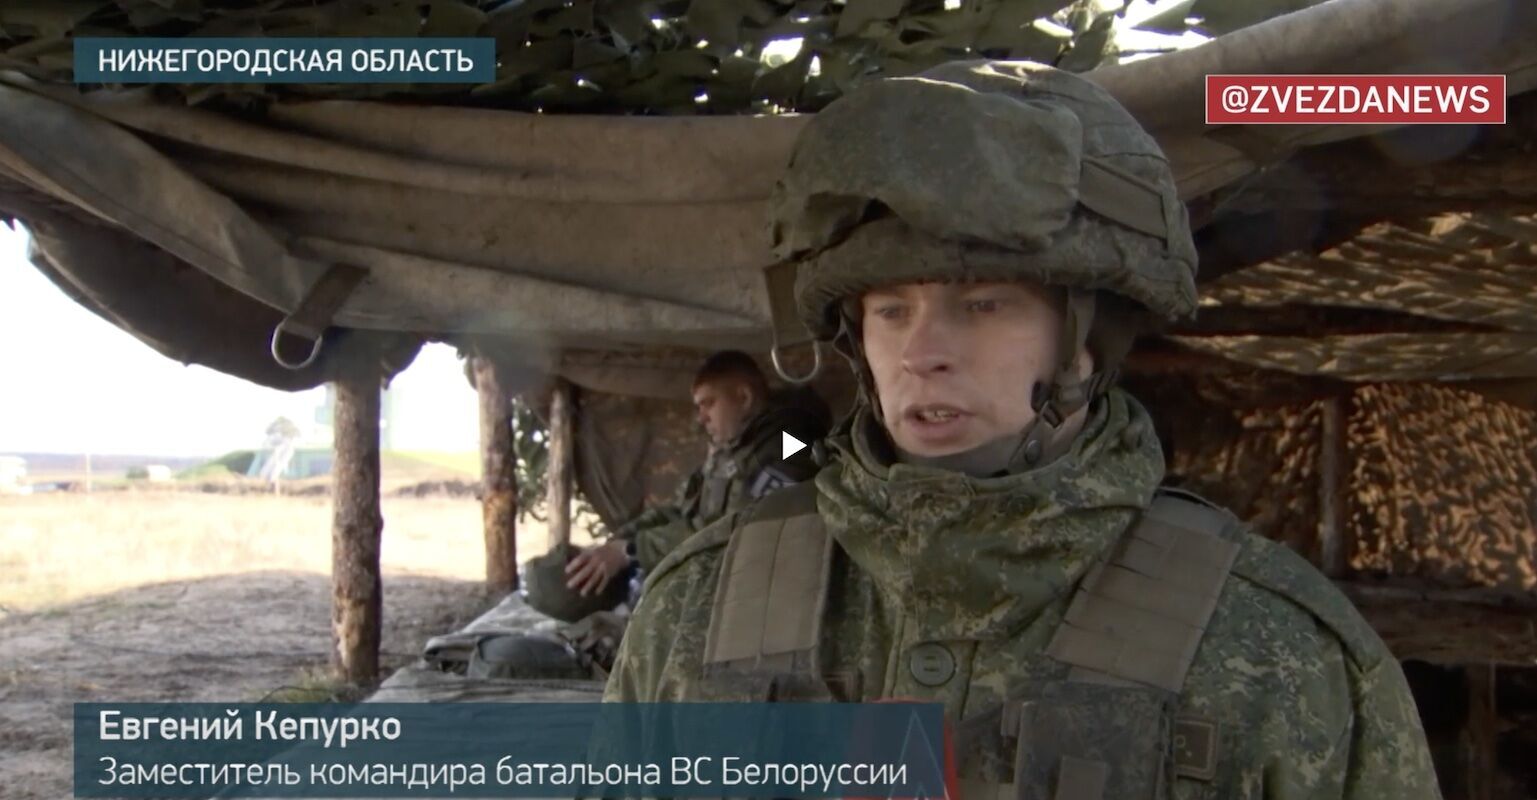 "Сначала оборона, потом наступление": белорусские военные отрабатывали тактику ведения боевых действий на полигоне Мулино в России